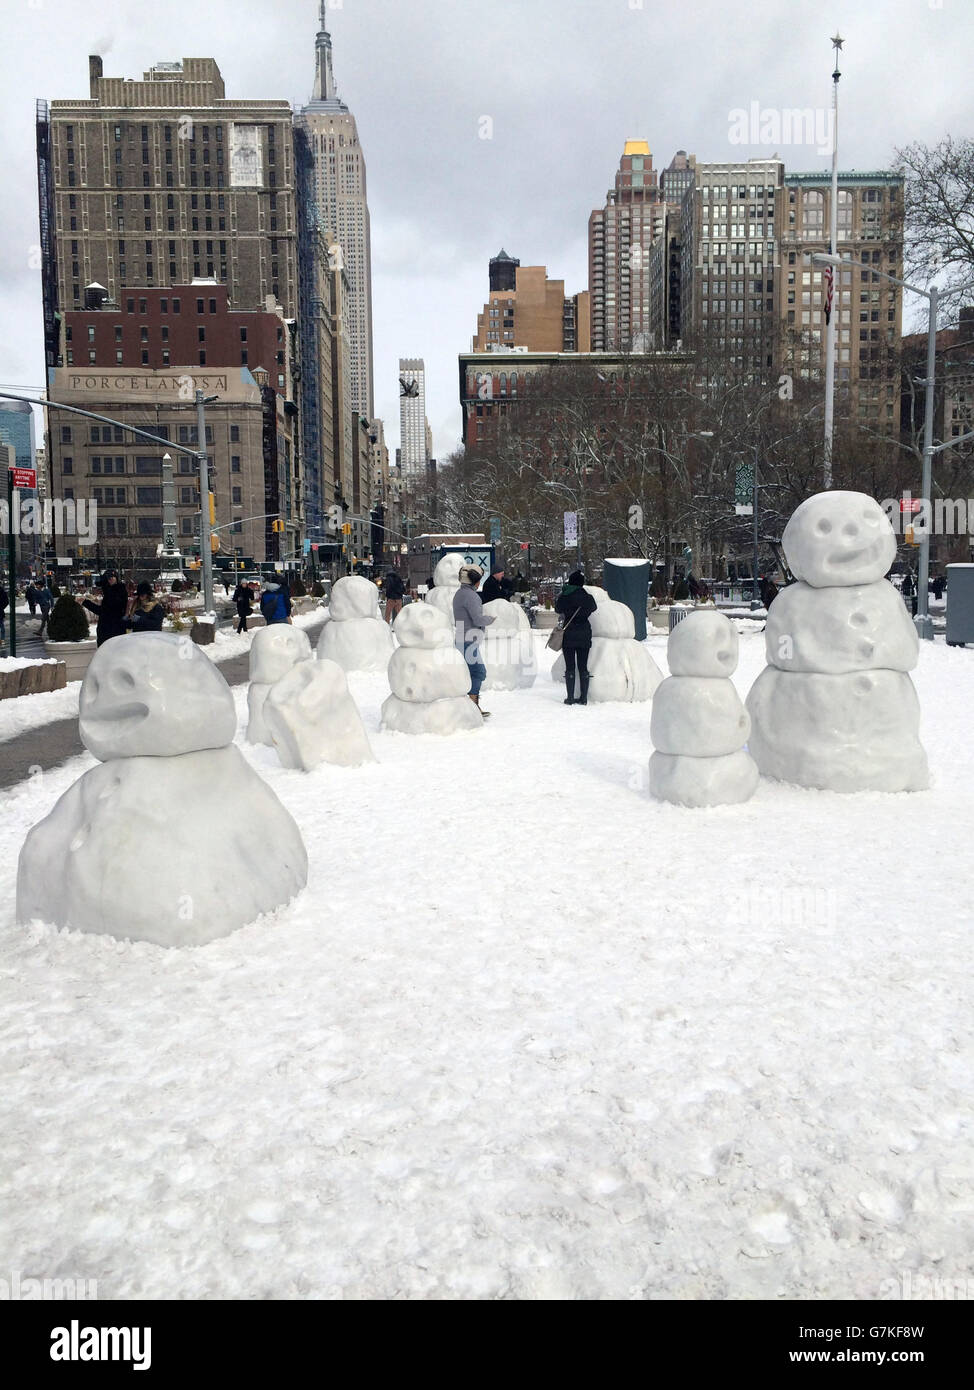 États-Unis, New York : alors que la tempête d'hiver Juno s'ouvre le 27 janvier 2015, les New-Yorkais construisent une communauté de grands bonhommes de neige à Flatiron Plaza, à la périphérie de Madison Square Park à New York. NEWZULU/RUSSELL WARSHAY Banque D'Images